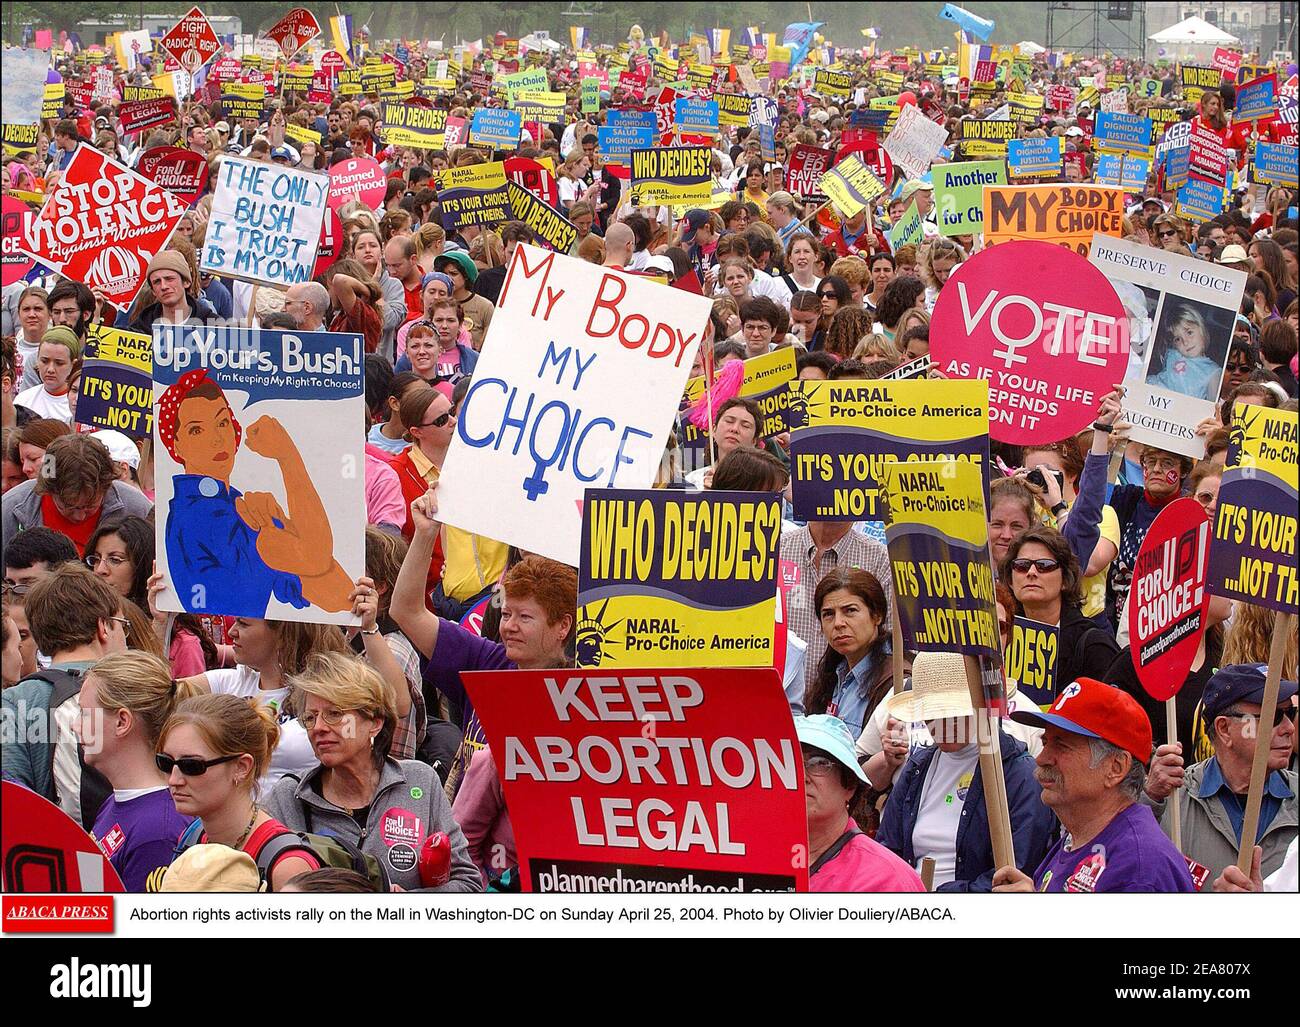 Activistas por los derechos del aborto se reúnen en el Mall en Washington-DC el domingo 25 de abril de 2004. Foto de Olivier Douliery/ABACA. Foto de stock